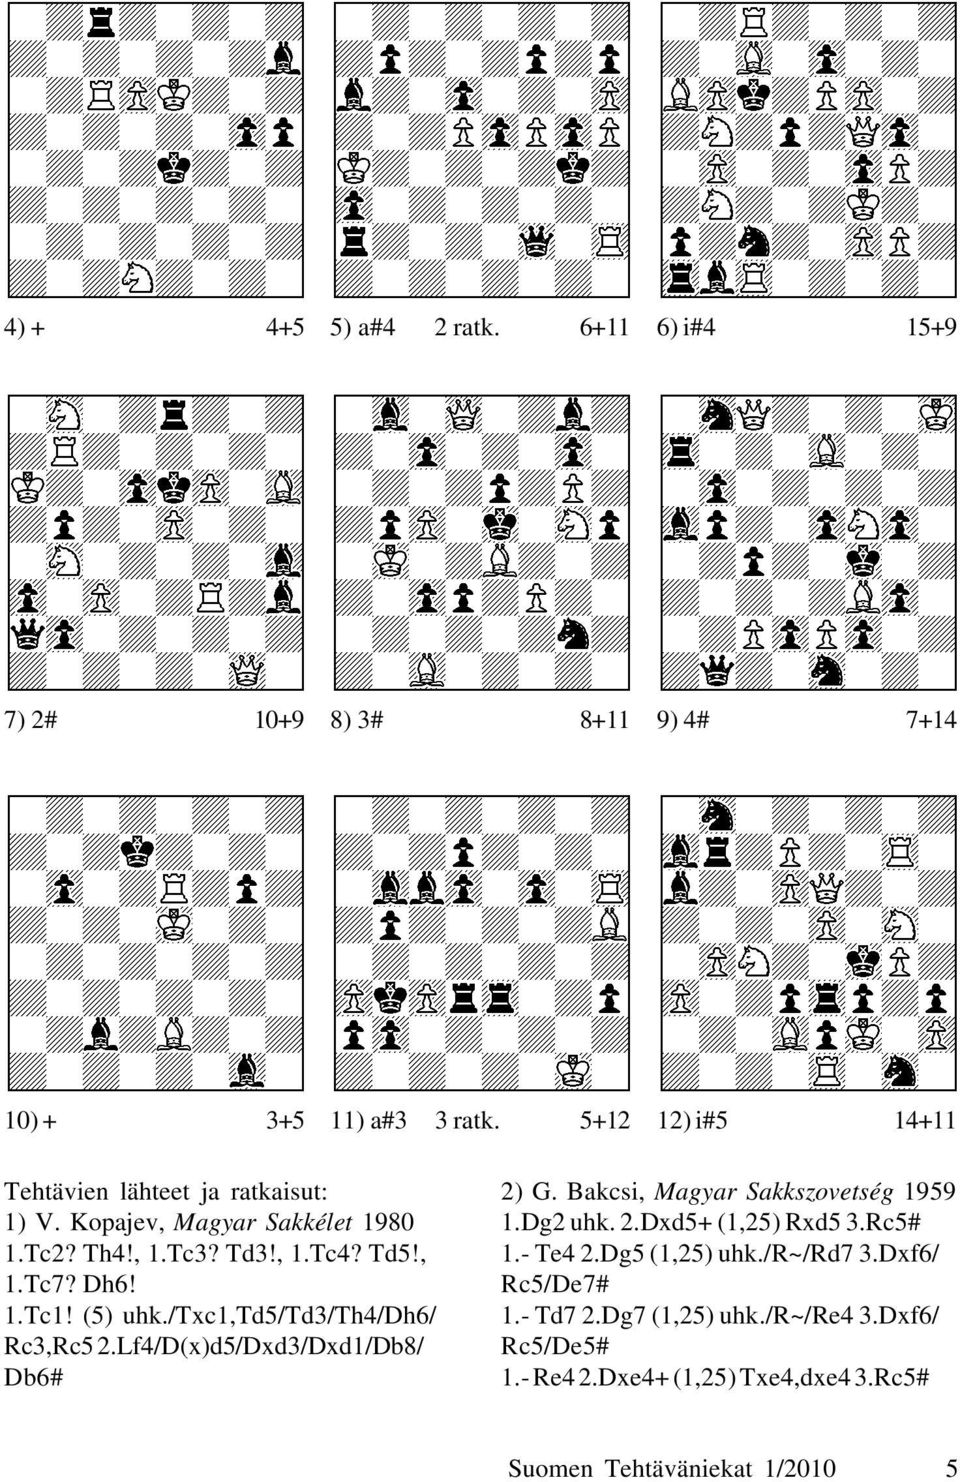 (5) uhk./txc1,td5/td3/th4/dh6/ Rc3,Rc5 2.Lf4/D(x)d5/Dxd3/Dxd1/Db8/ Db6# 2) G. Bakcsi, Magyar Sakkszovetség 1959 1.Dg2 uhk. 2.Dxd5+ (1,25) Rxd5 3.